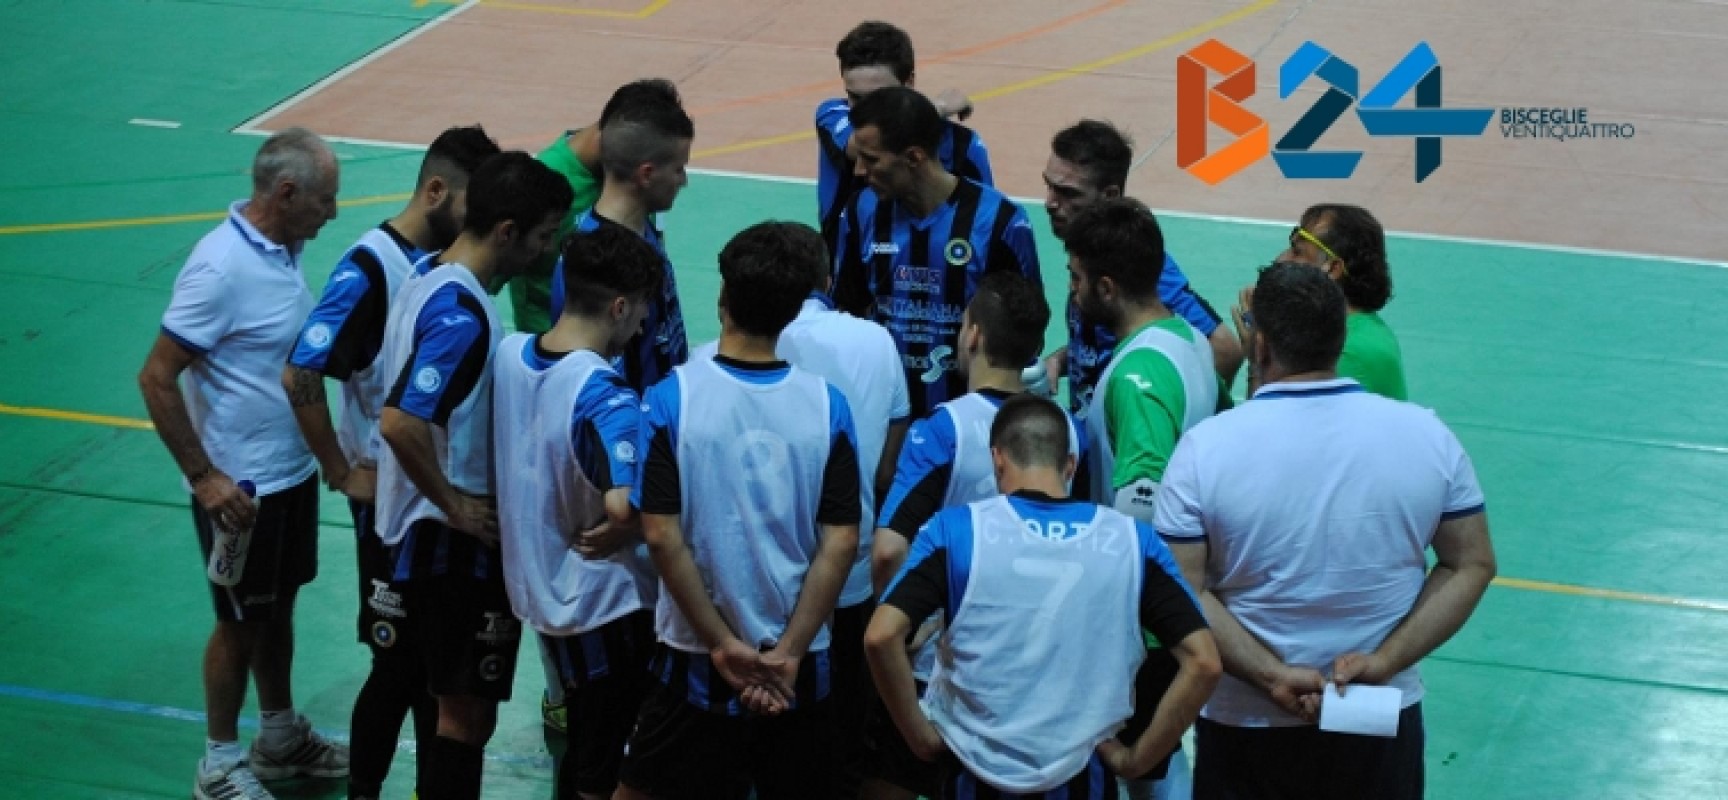 Futsal Bisceglie secondo stop stagionale, pesante ko in casa del Policoro